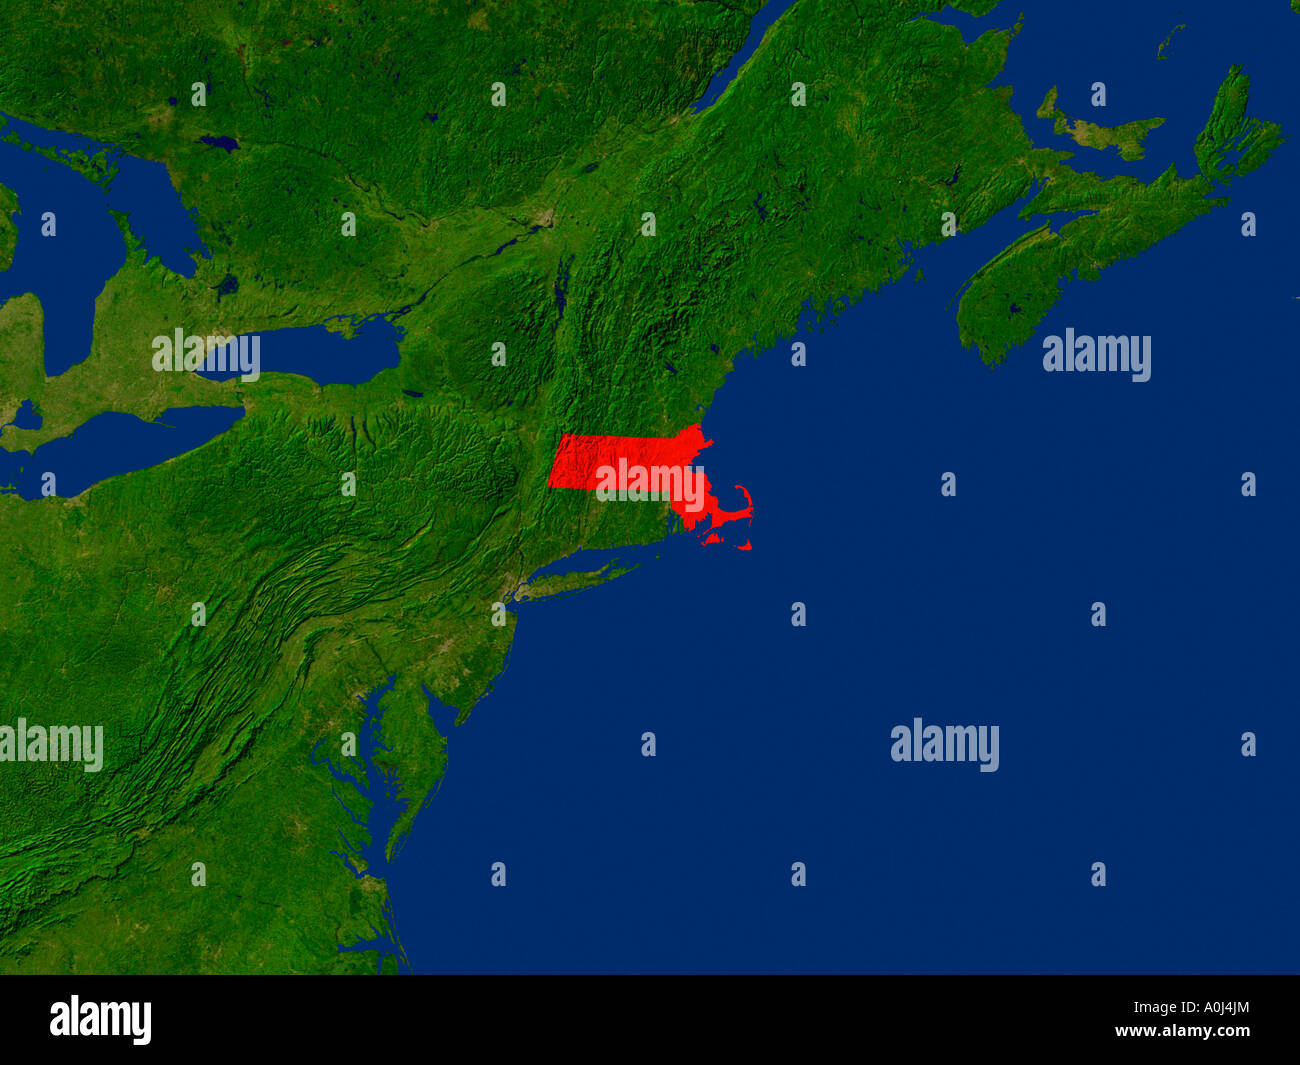 Ha evidenziato un'immagine satellitare del Massachusetts Stati Uniti d'America Foto Stock